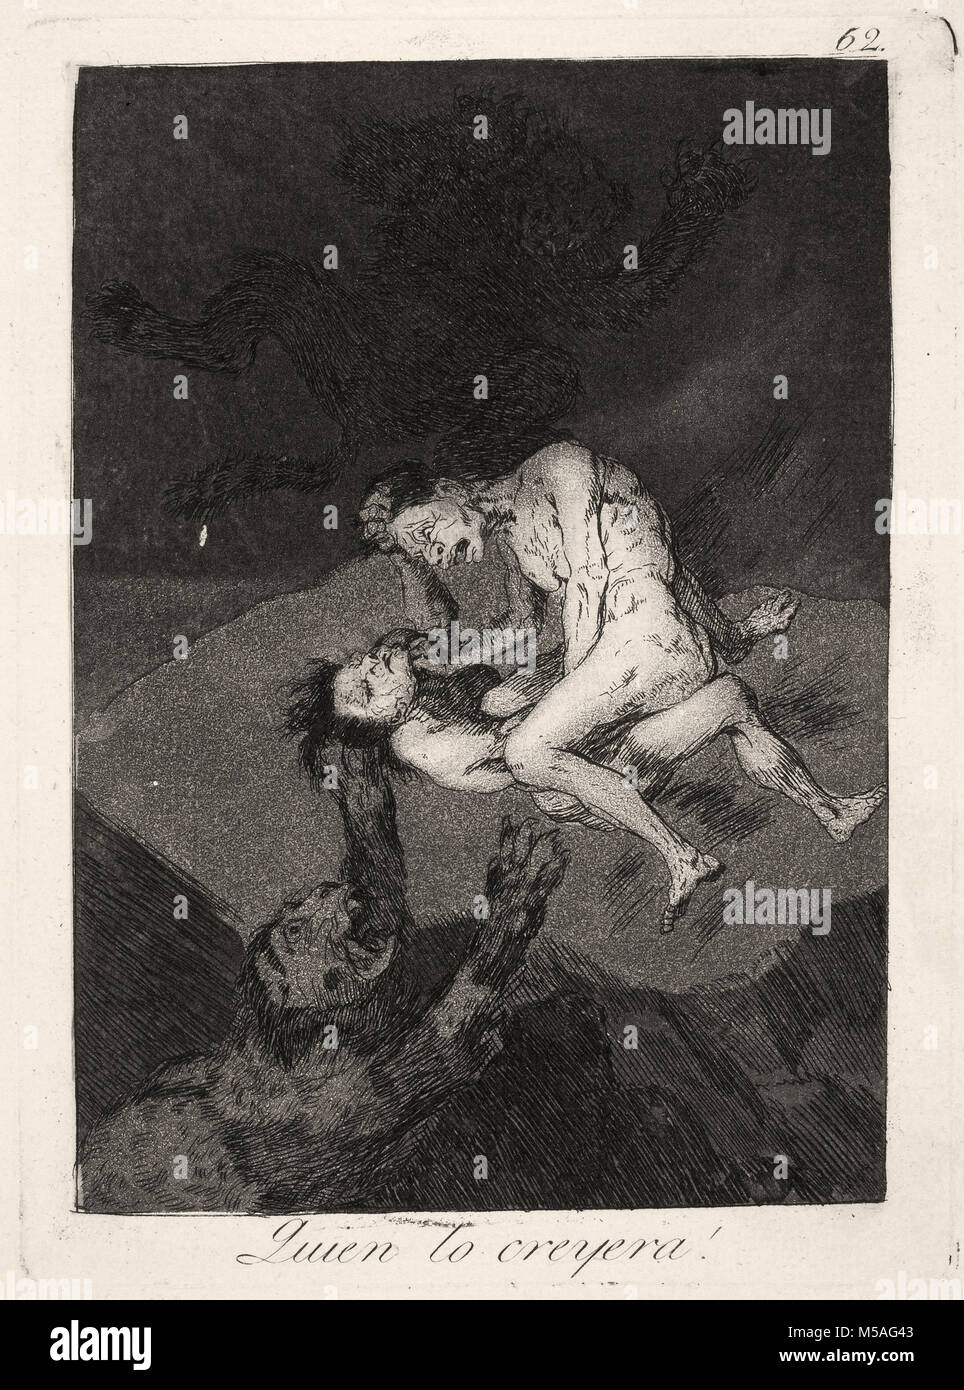 Francisco de Goya - Los Caprichos - No. 62 - Quien lo creyera! Stock Photo